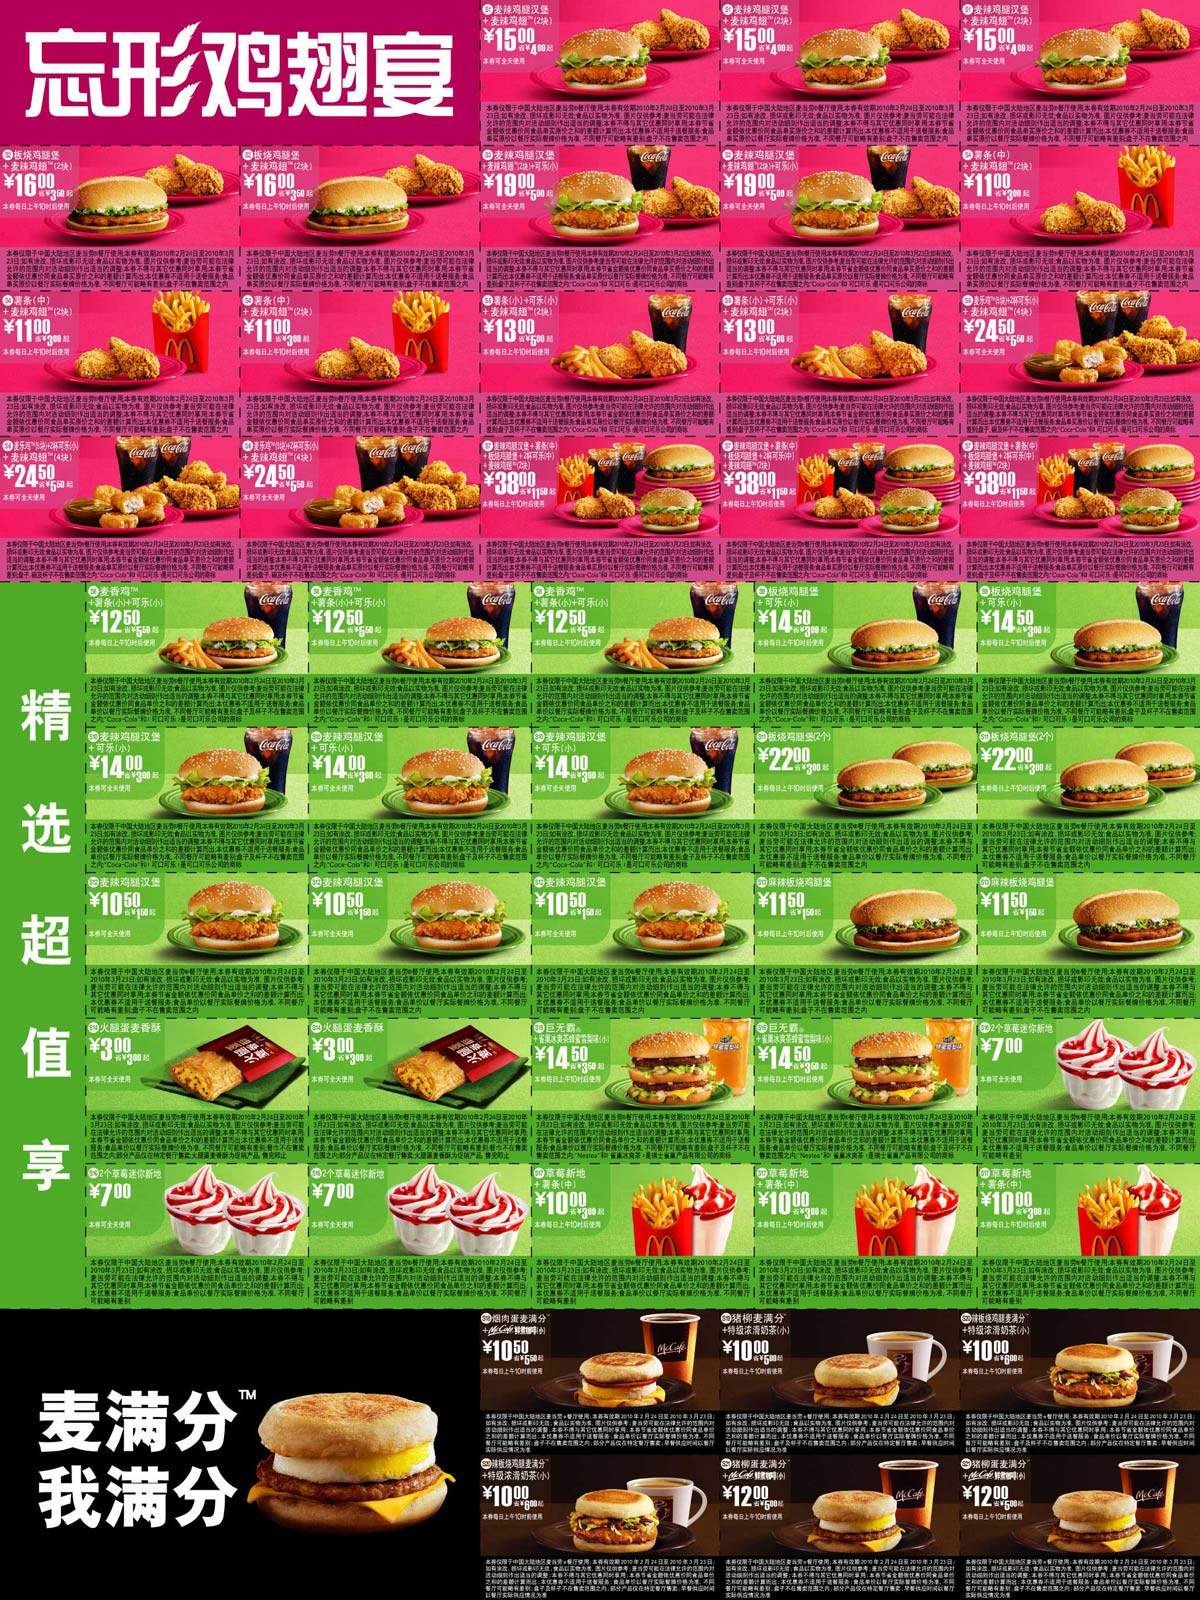 优惠券图片:2010年2月3月麦当劳电子优惠券整张打印版本 有效期2010年02月24日-2010年03月23日